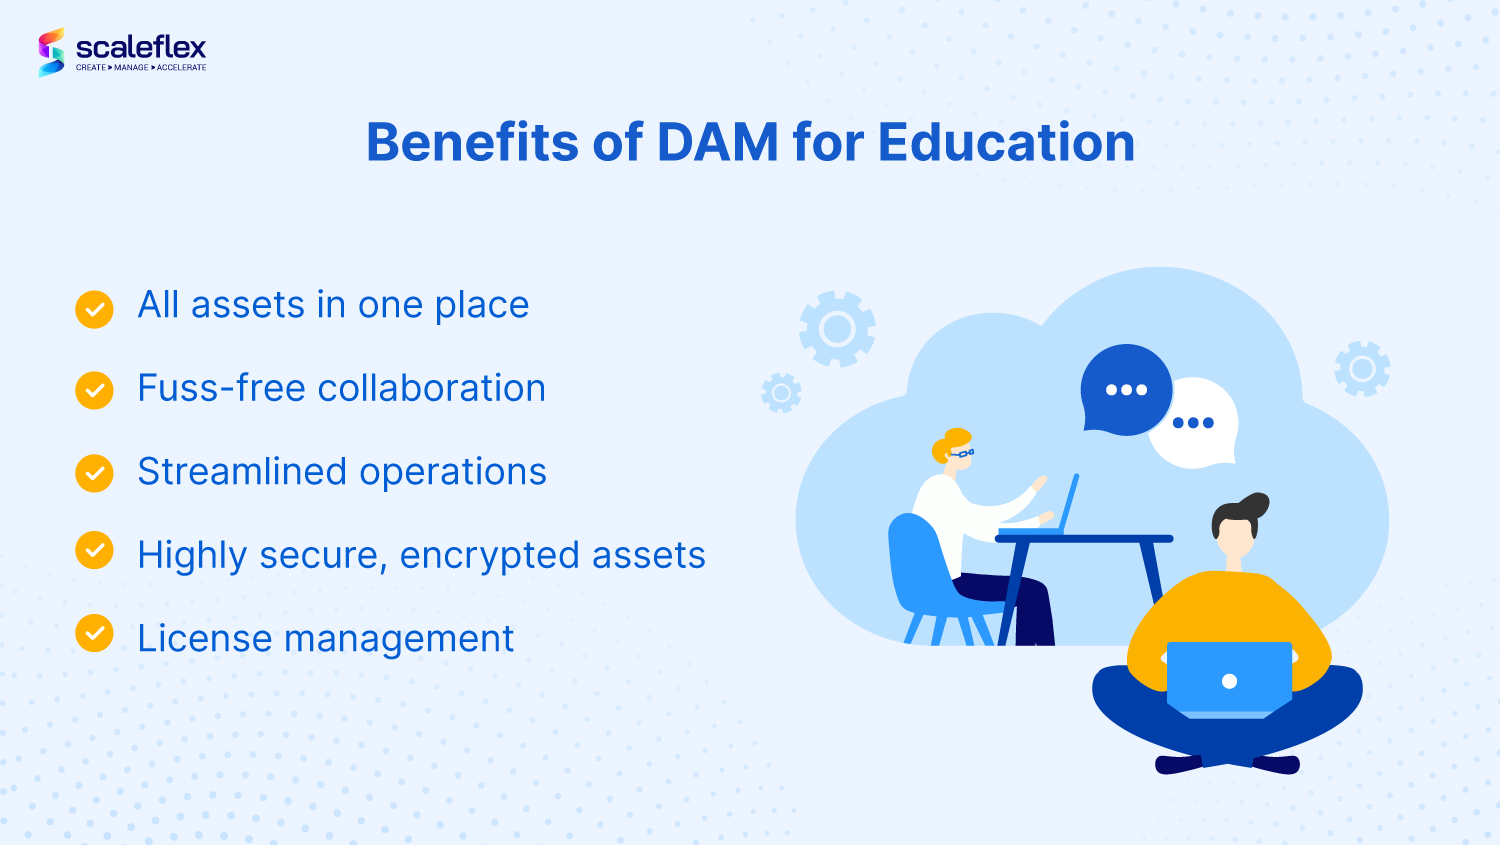 Benefits of Digital Asset Management for education